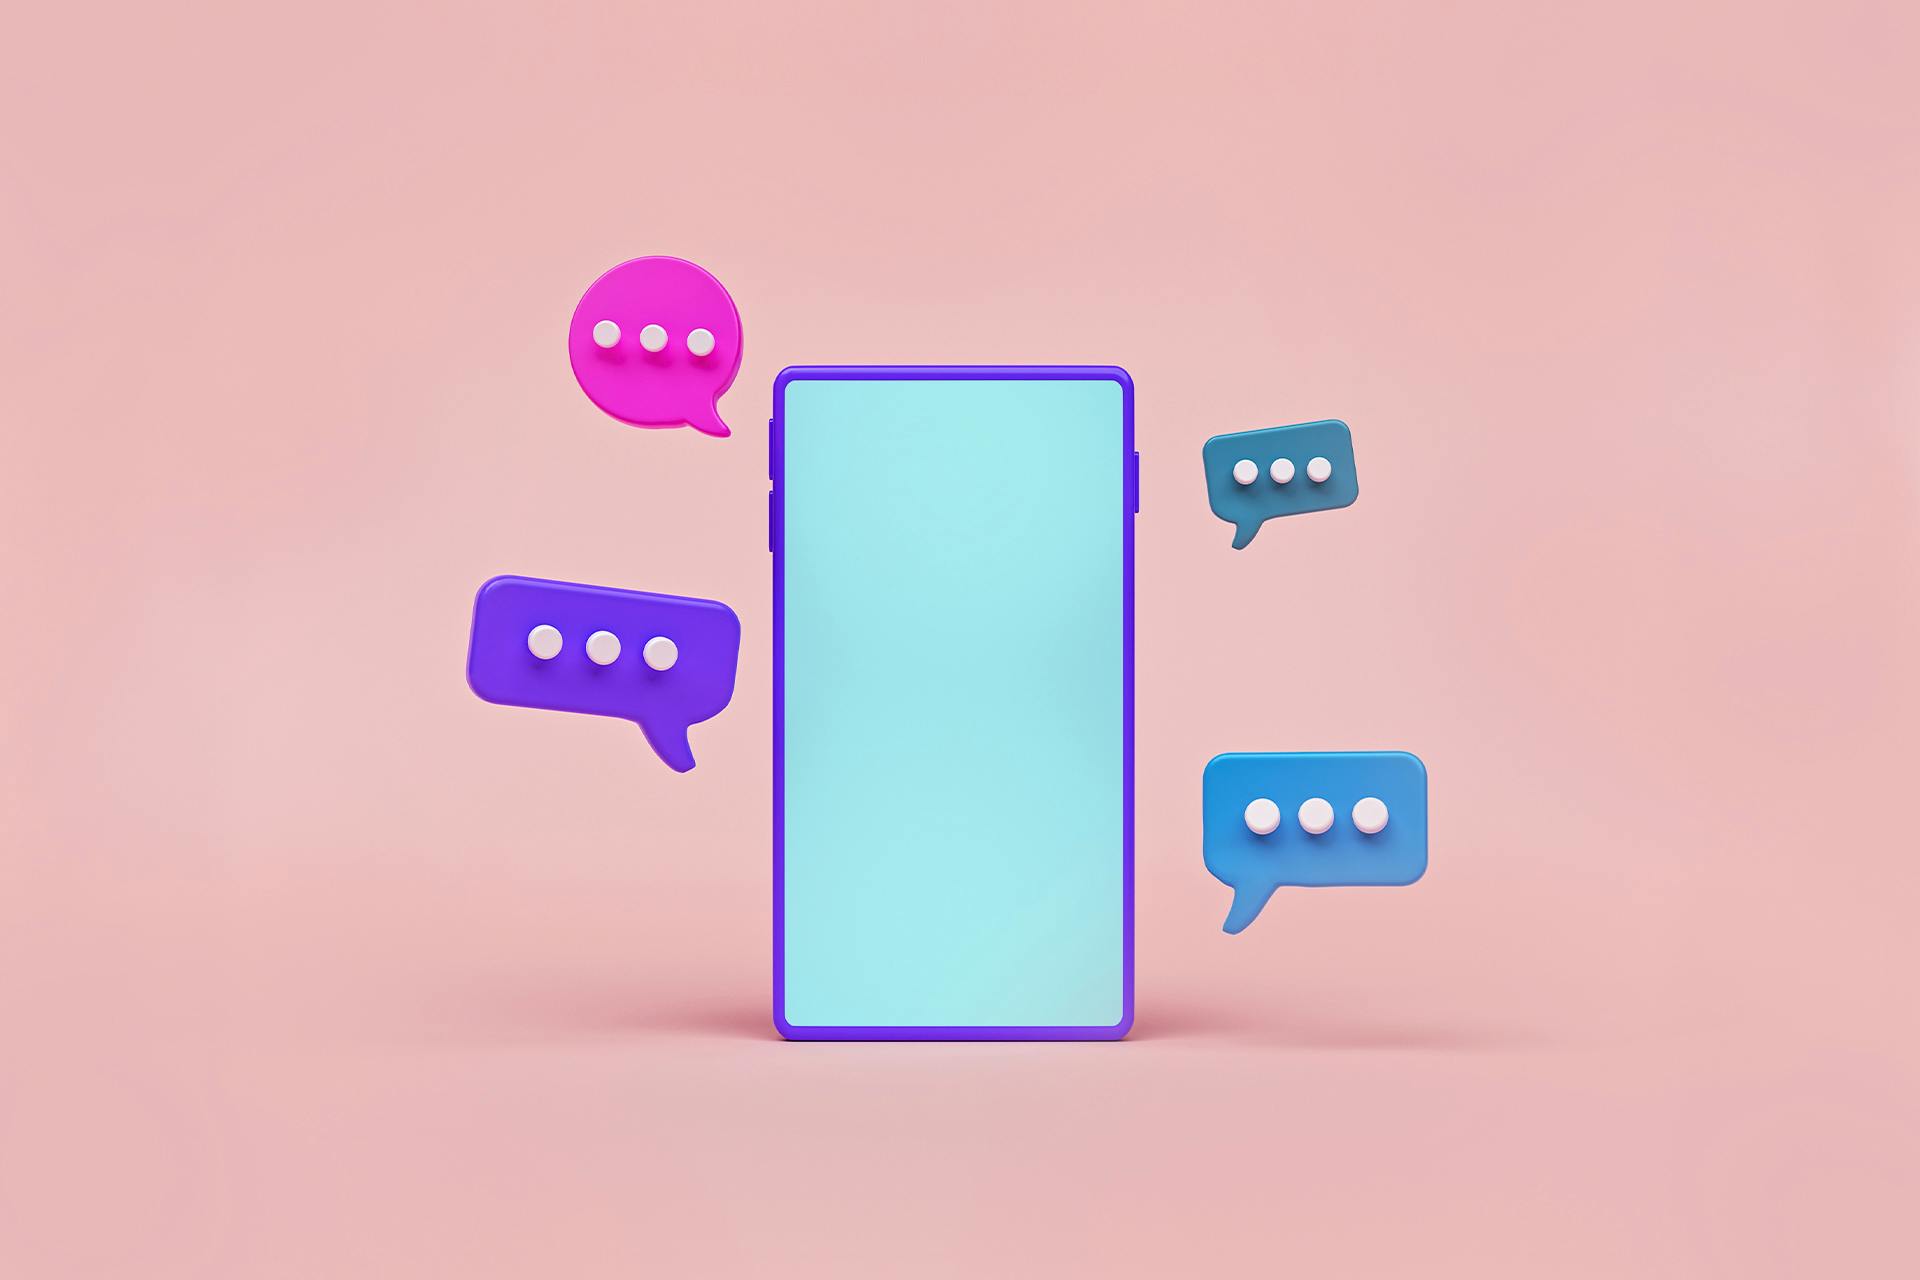 Une image d'un téléphone de dessin animé avec des bulles de discussion stylisées apparaissant autour de l'écran sur un fond rose uni. Chacune des quatre bulles de discussion est d'une couleur différente, symbolisant les différents fils de discussion dans lesquels les spécialistes du marketing peuvent s'engager sur Reddit.